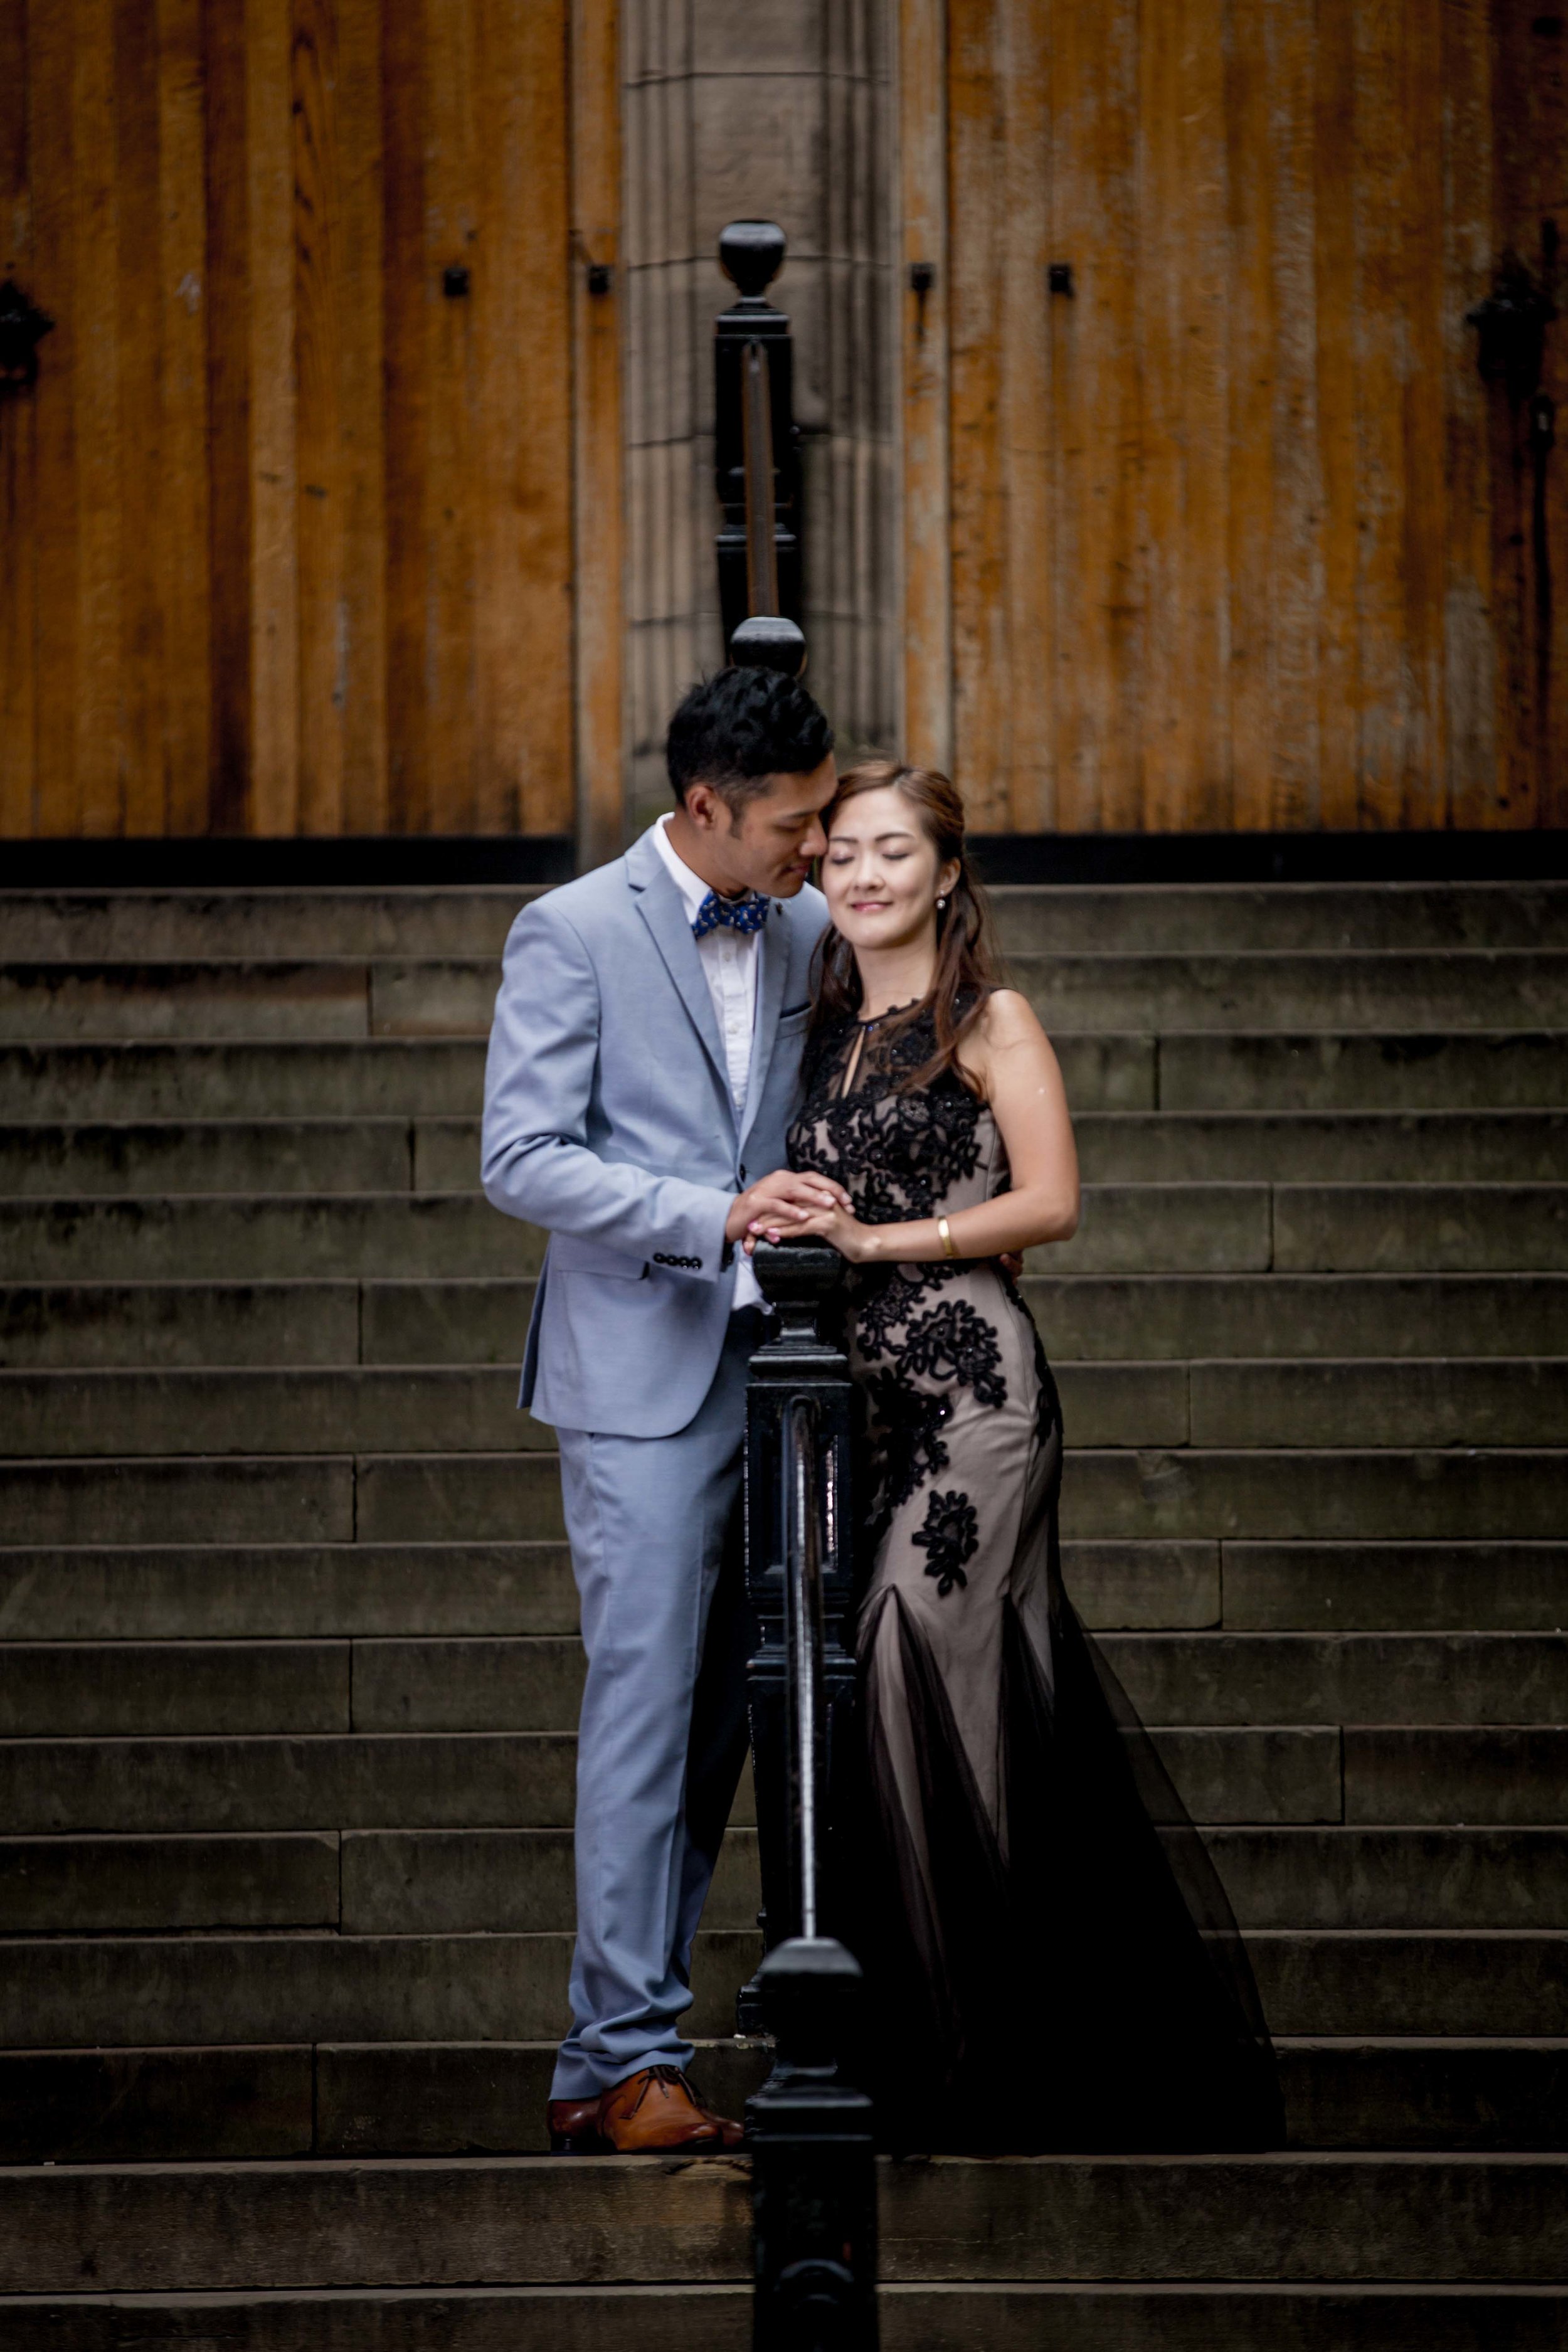 婚紗攝影倫敦英國-婚纱摄影伦敦英国-Chinese- pre-wedding-engagement-shoot-photoshoot-London-edinburgh-destination-wedding-photographer-hong-kong-natalia-smith-photography-31.jpg